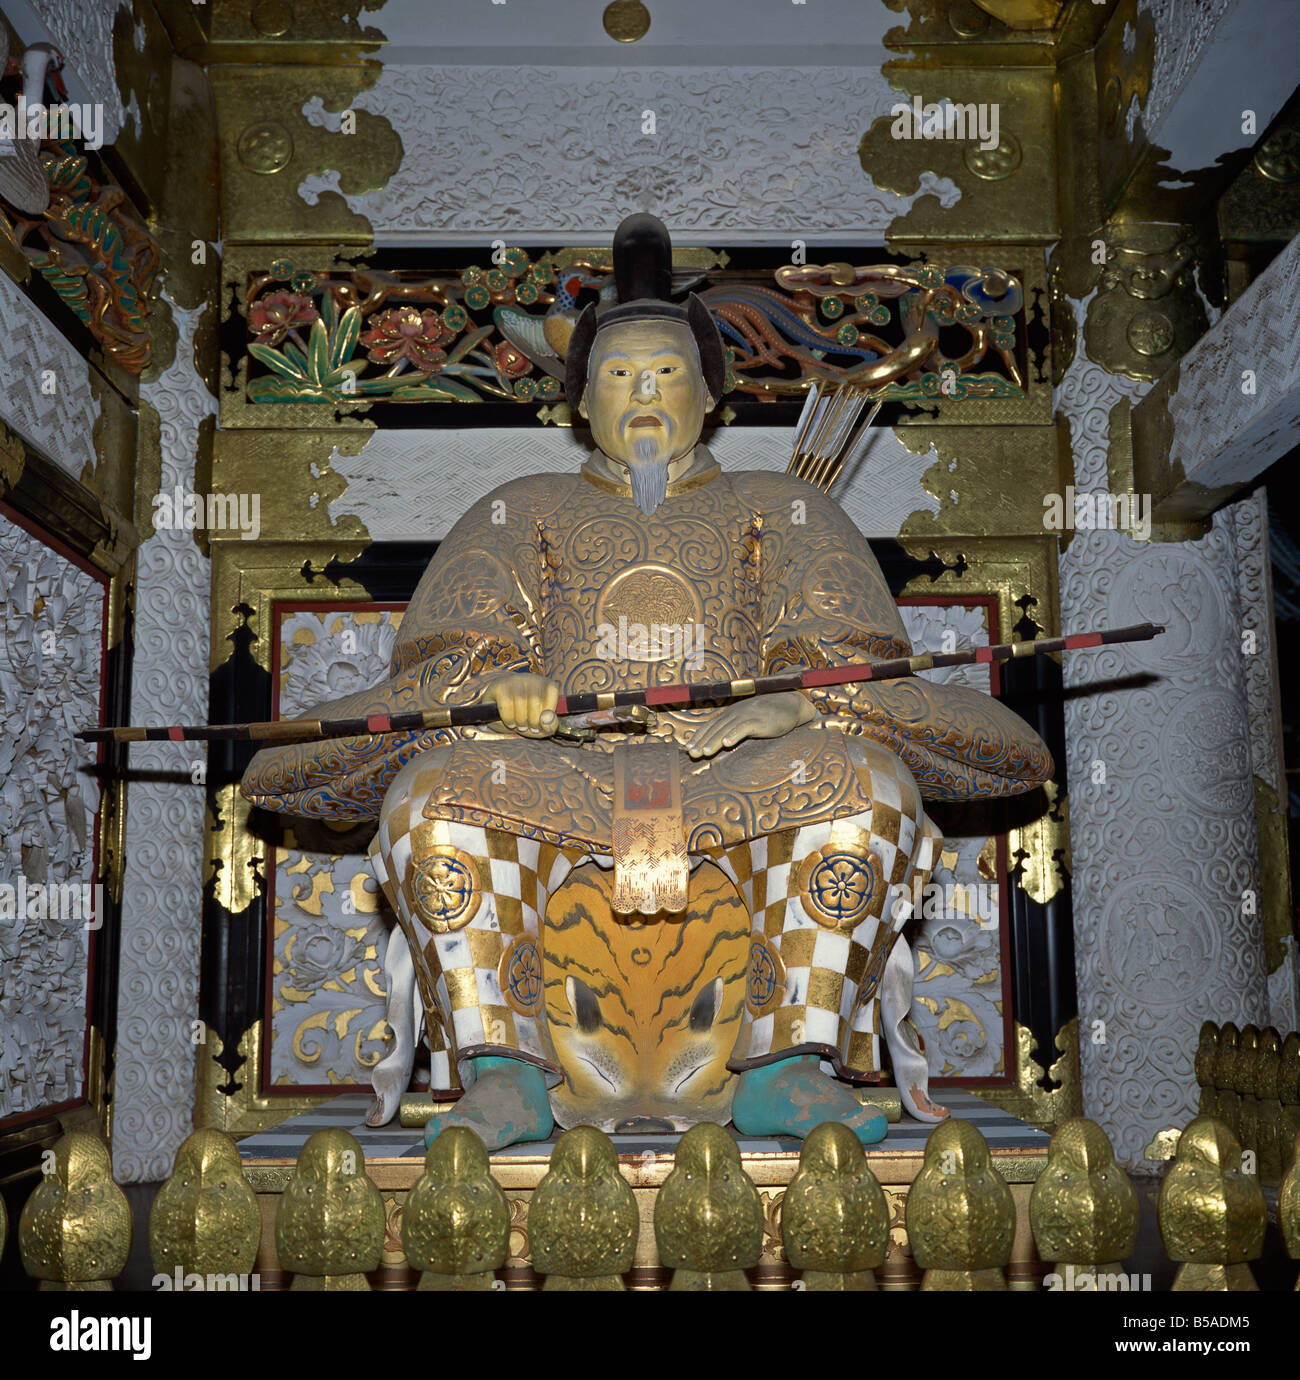 Zuijin guardian, Heian era, Yomai-mon Gate, Tosho-gu Shrine, Nikko, Honshu, Japan Stock Photo